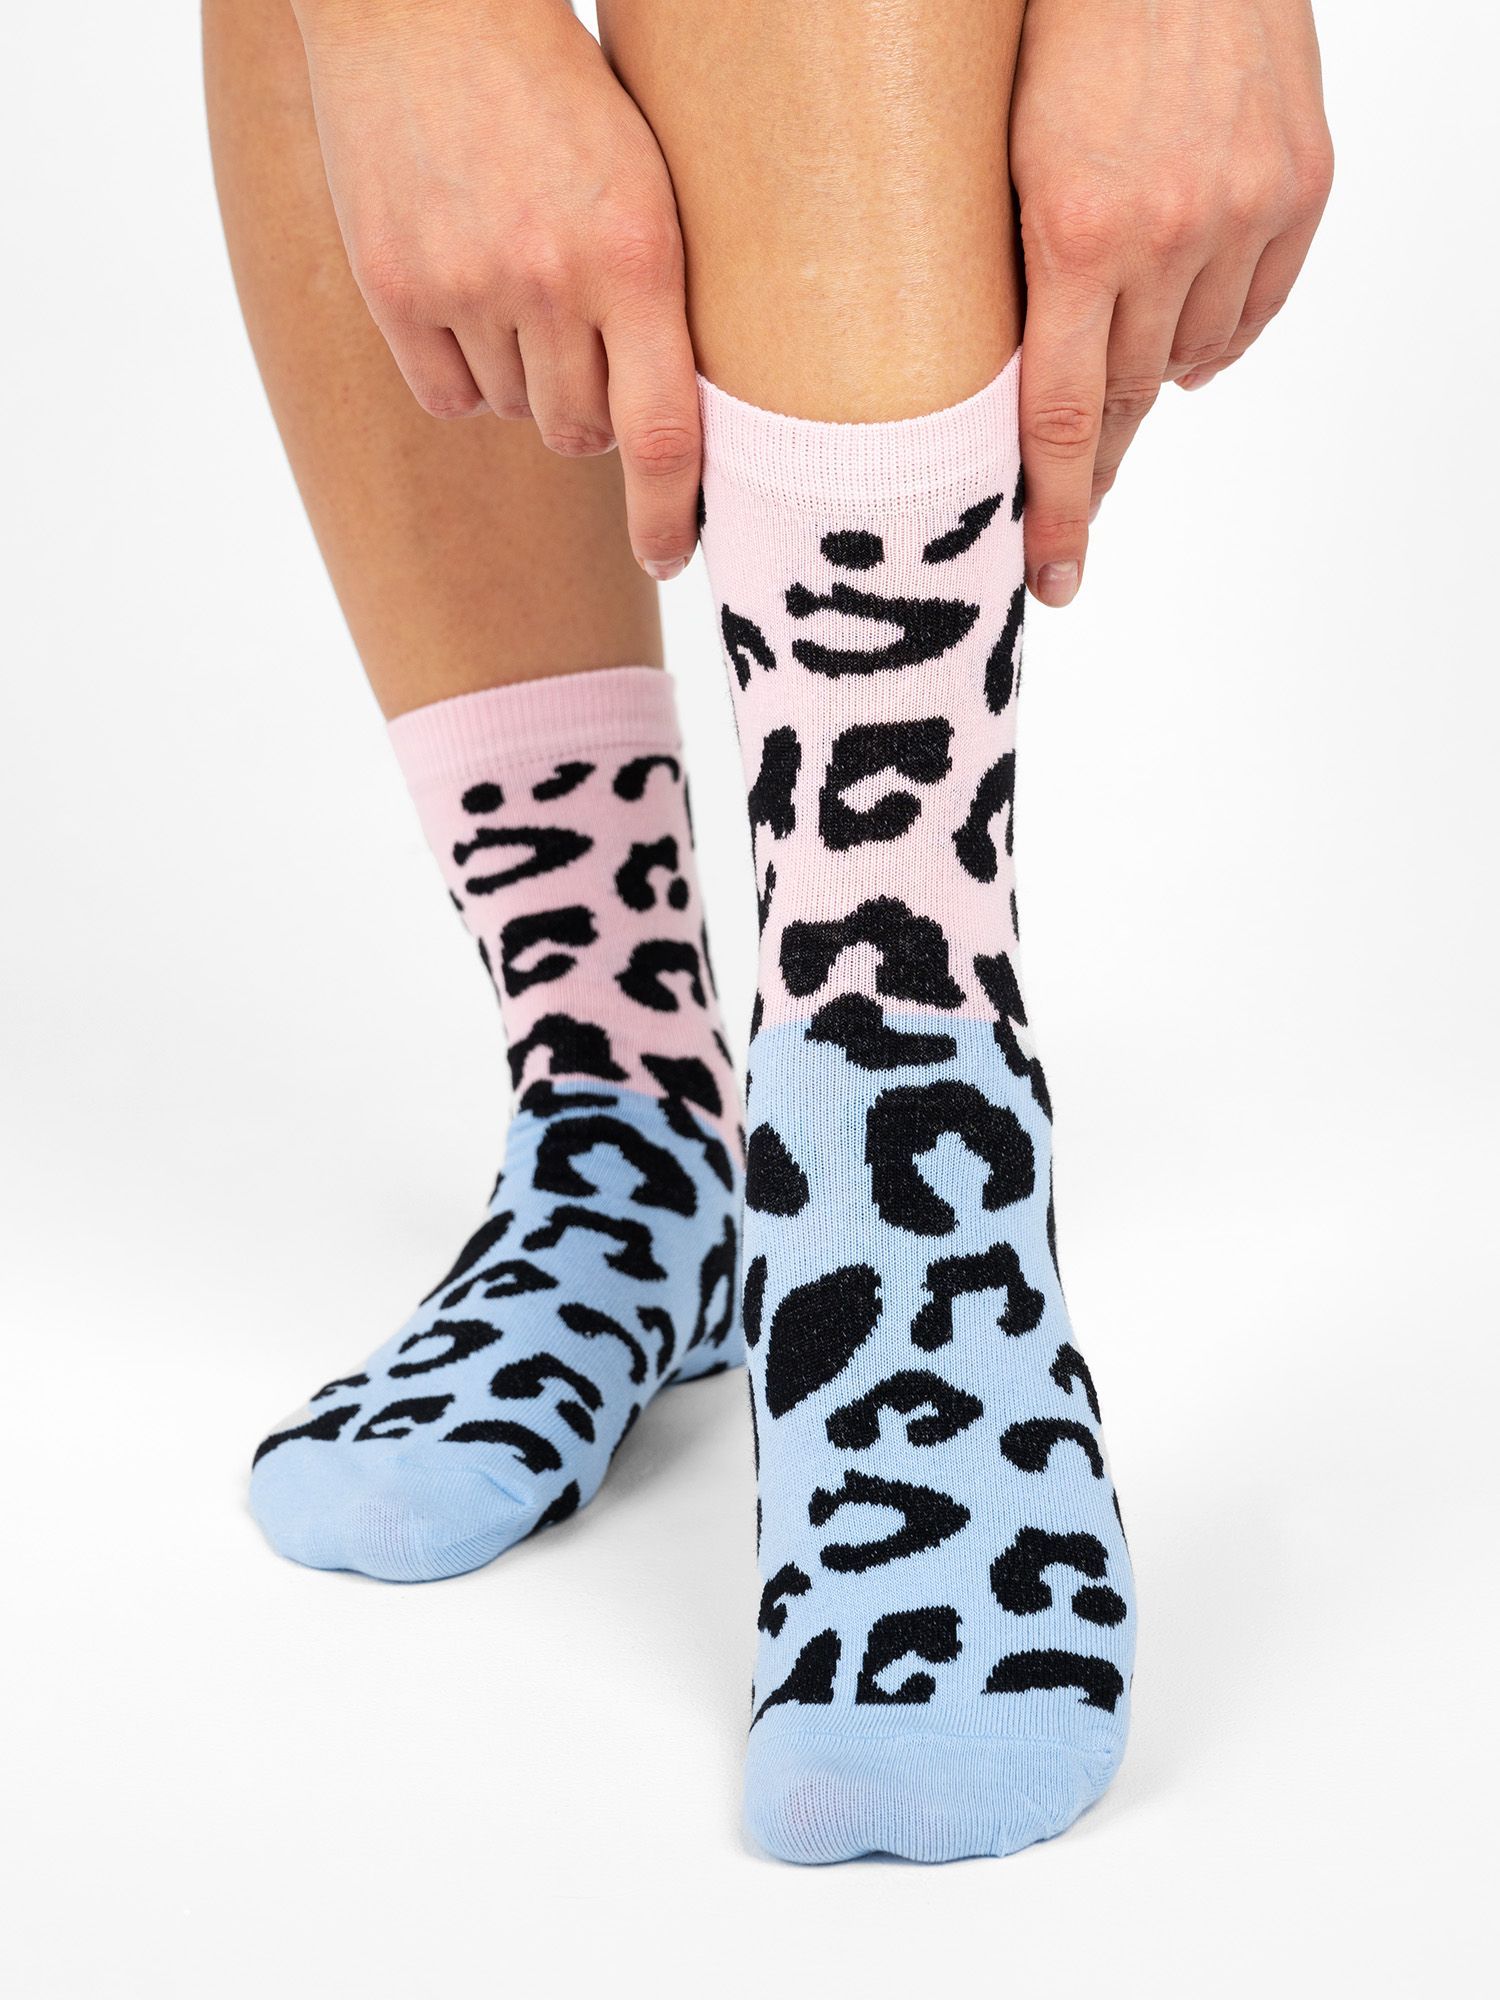 Носки с леопардовым принтом. Леопардовые носки женские. Носки леопардовой расцветки. Леопардовые носки с ботинками. Купить носки в озоне